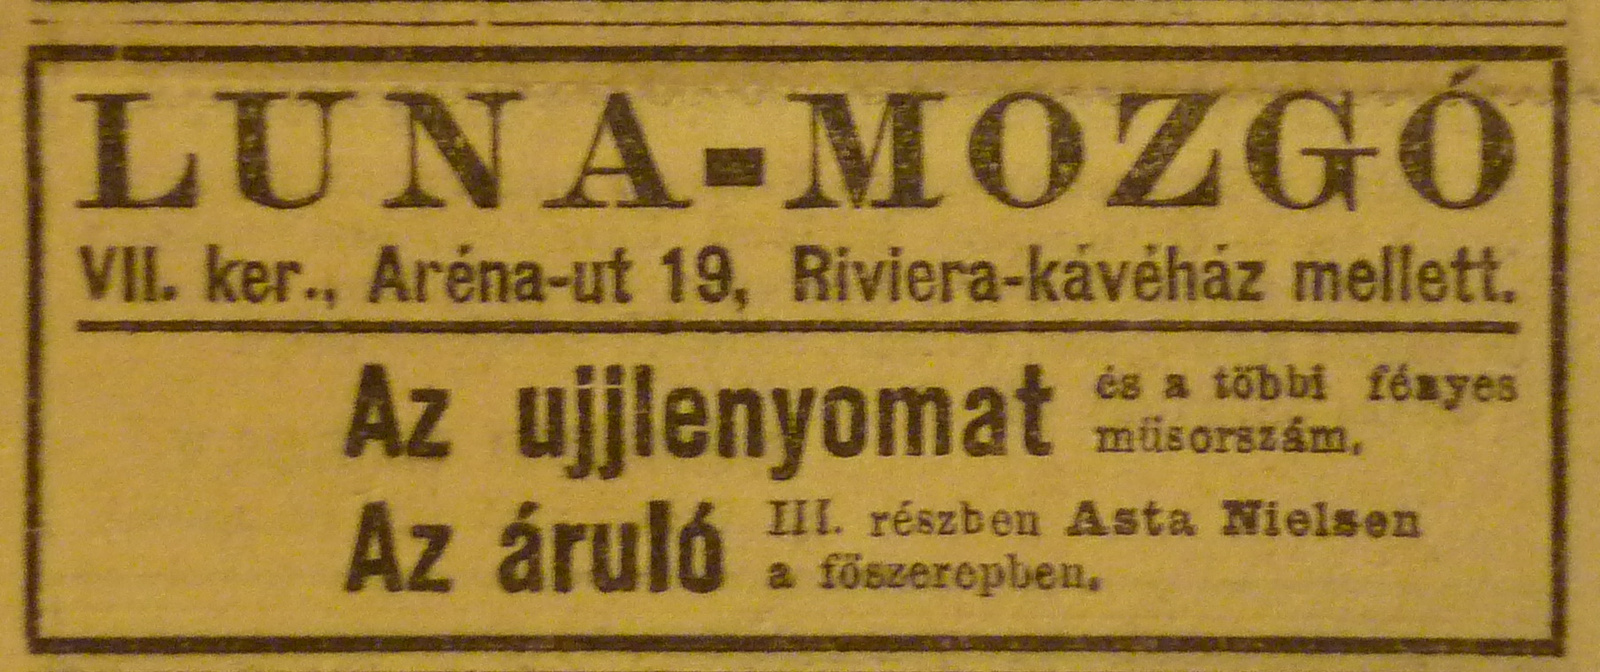 NepszavaApro-191201-08